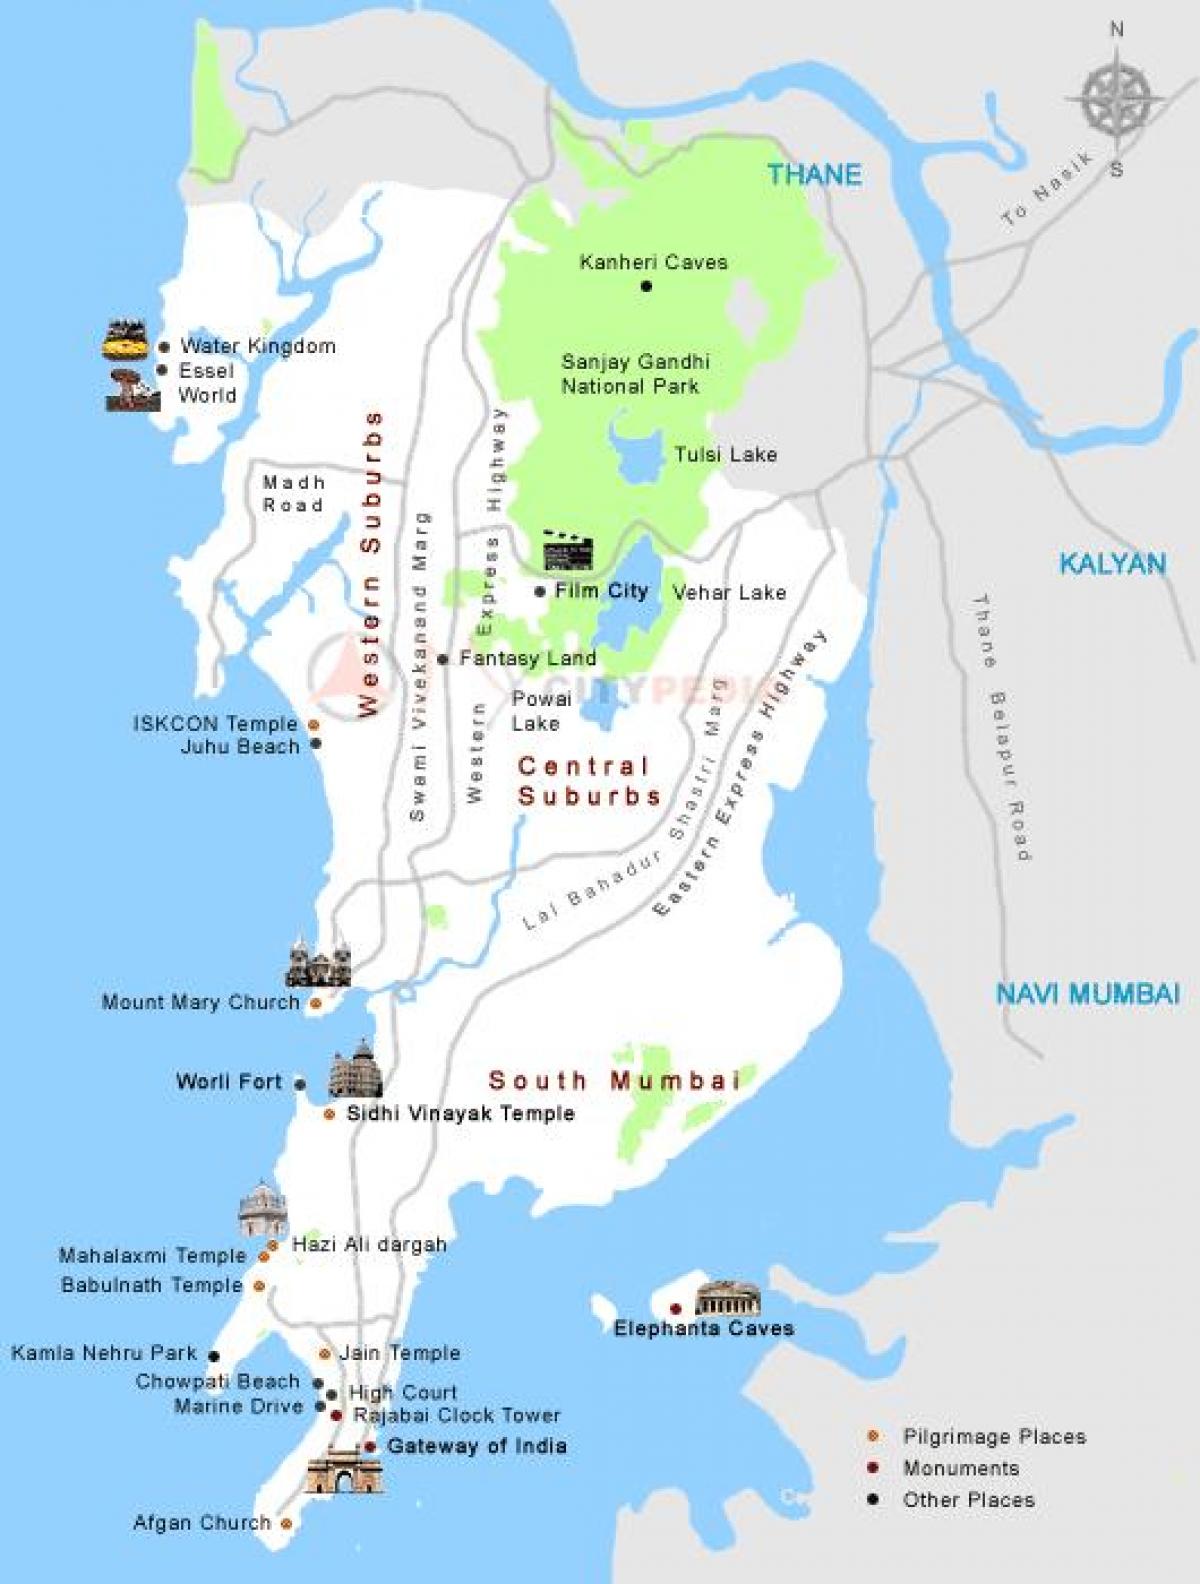 नक्शा मुंबई के पर्यटक स्थल